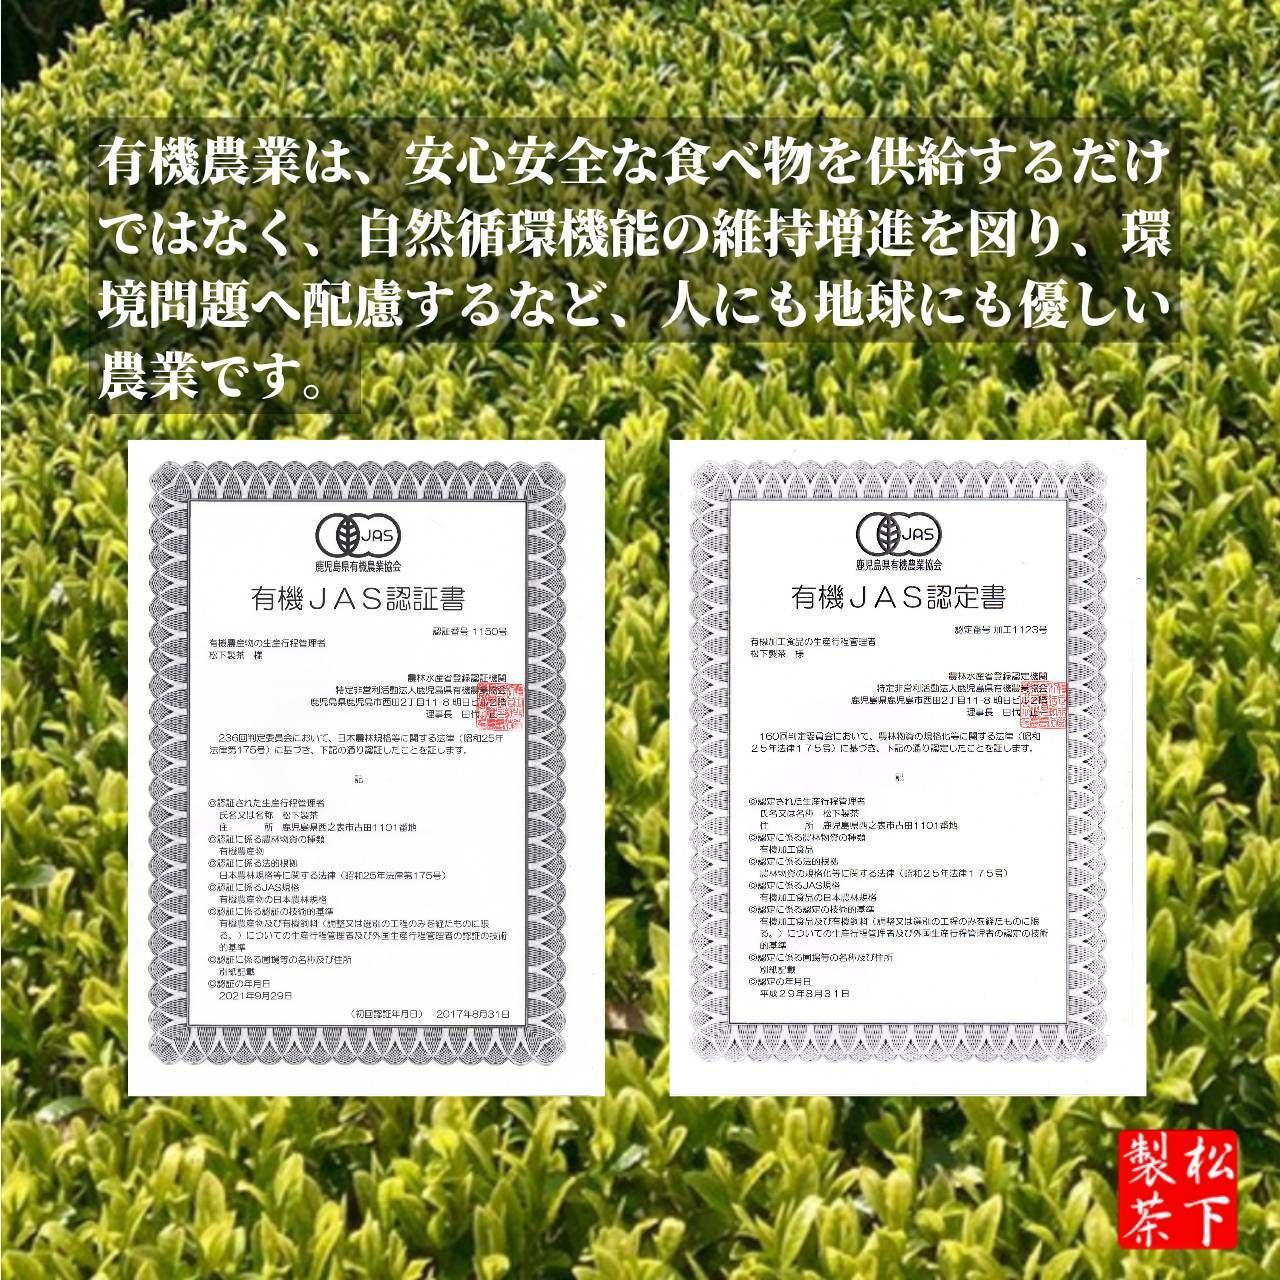 【2022年産】種子島の有機緑茶『やぶきた』 茶葉(リーフ) 100g 松下製茶-5